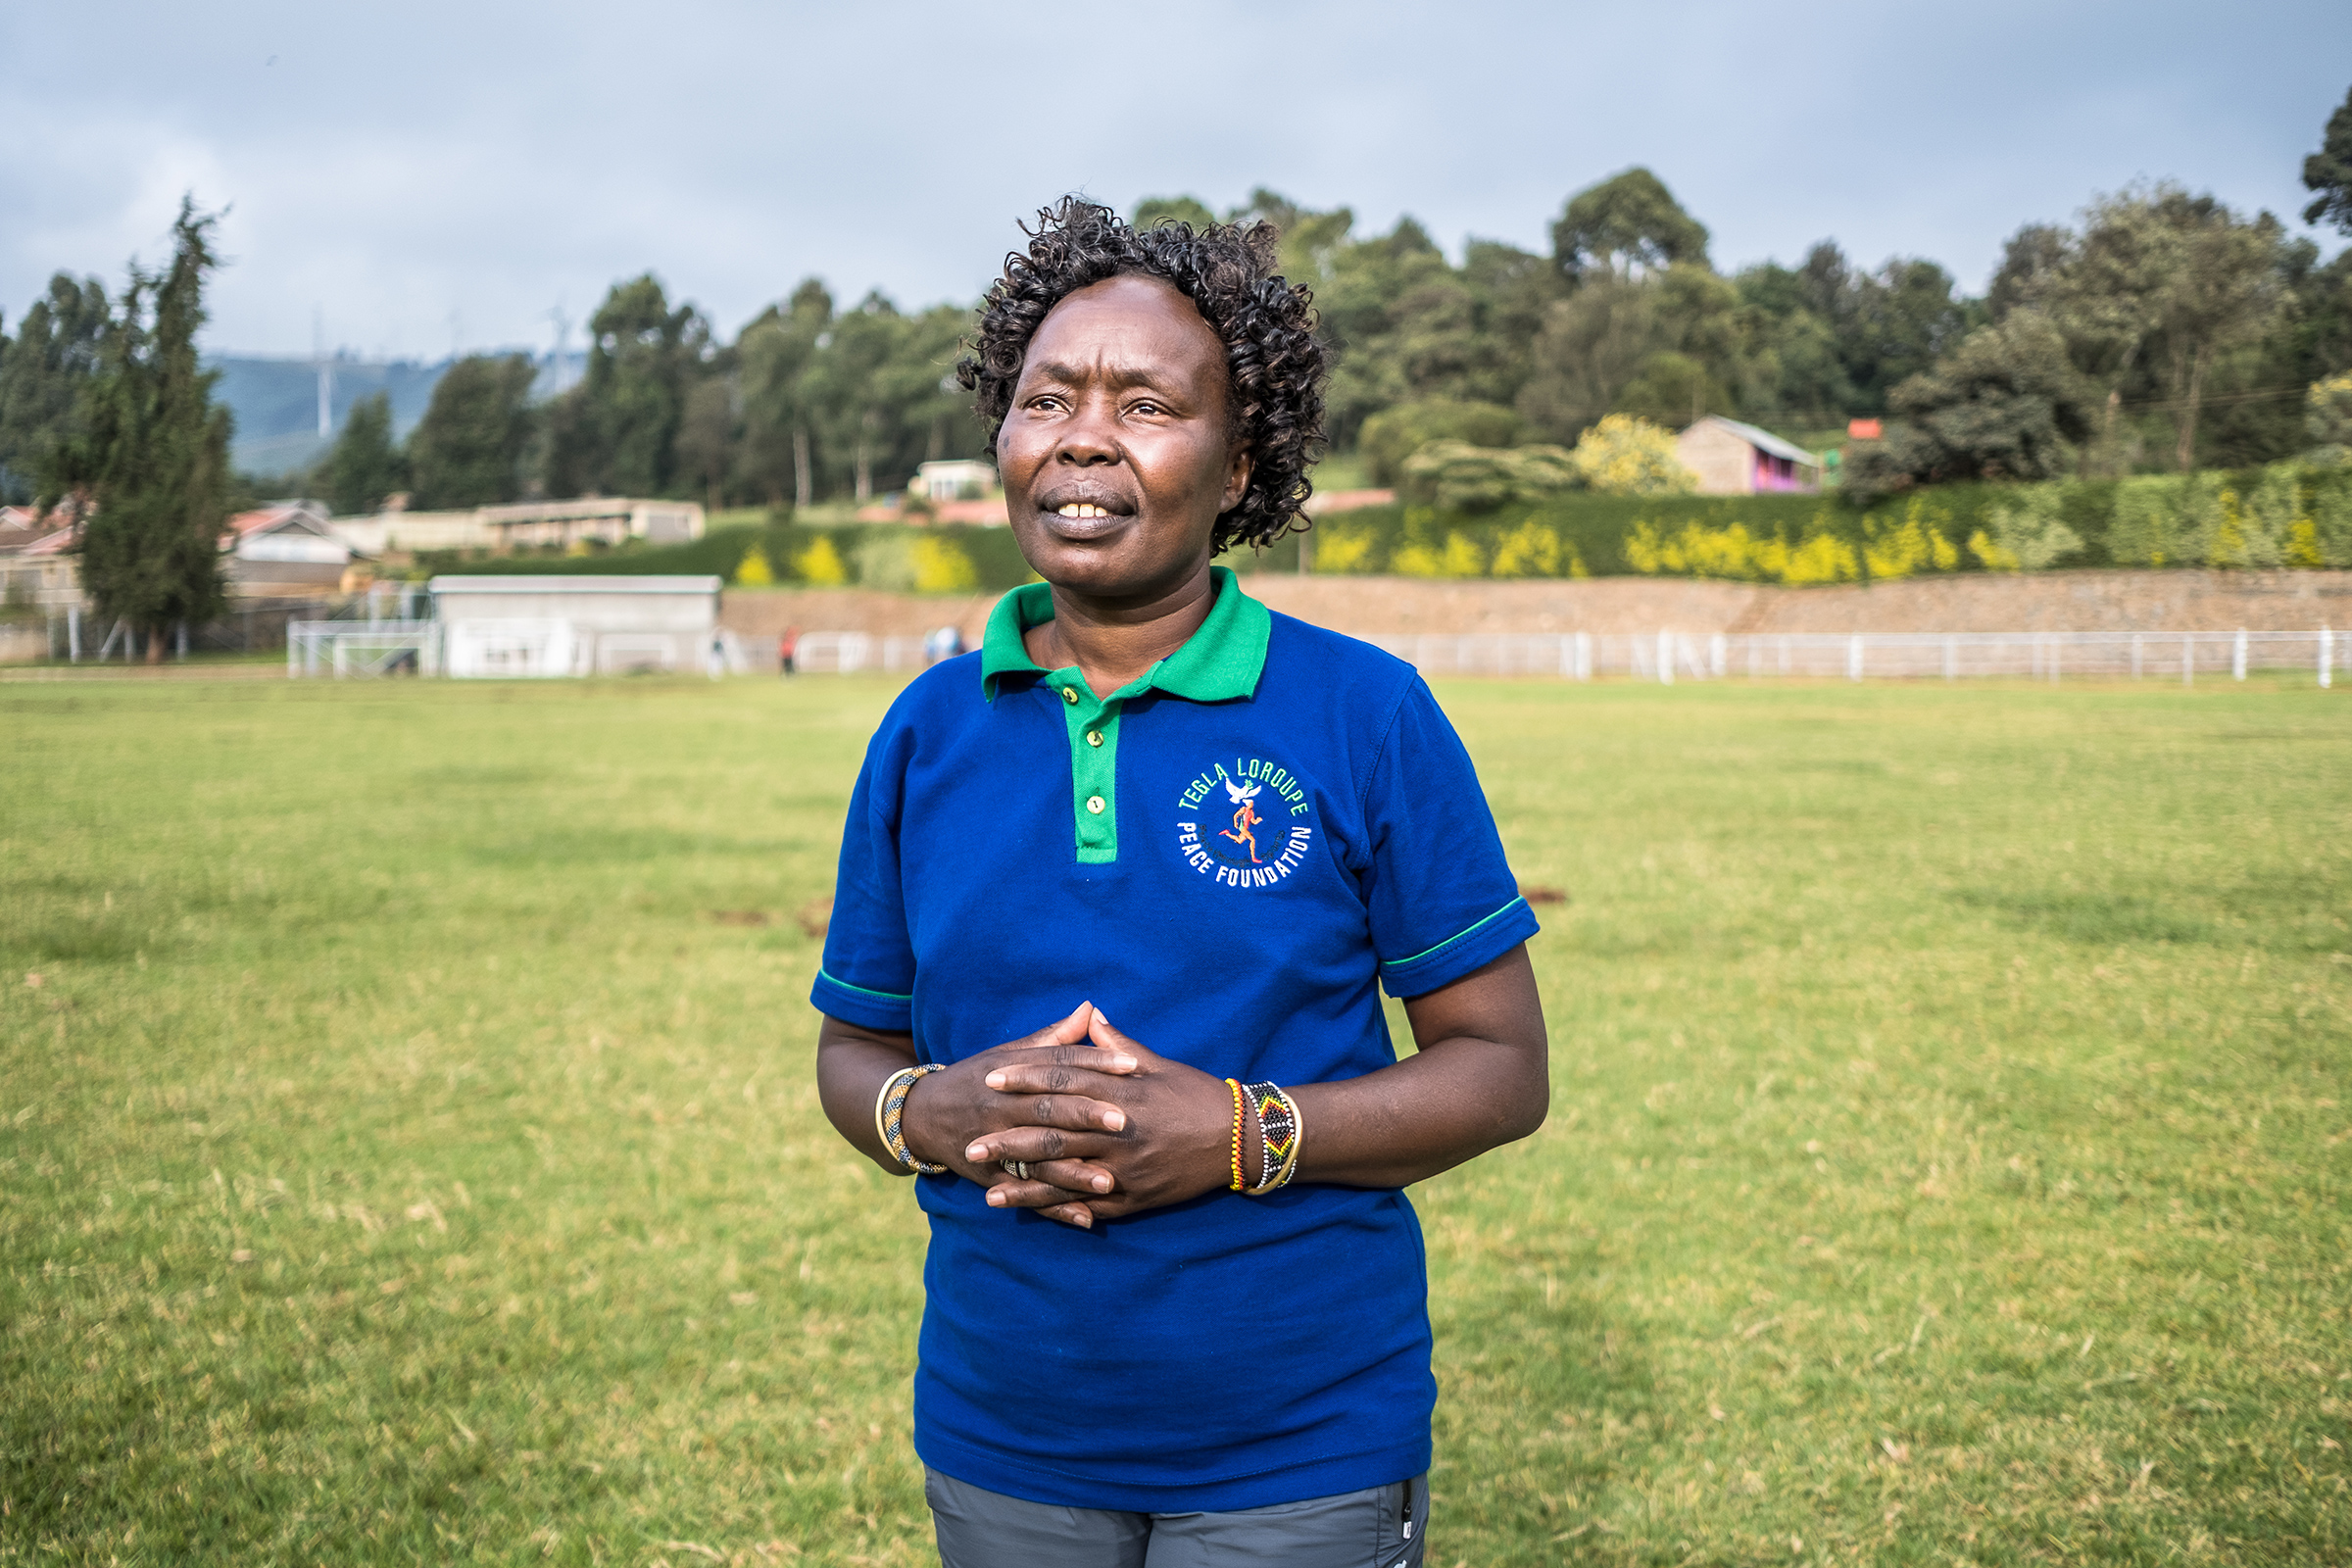 Camp founder Tegla Loroupe. (Brian Otieno for TIME)